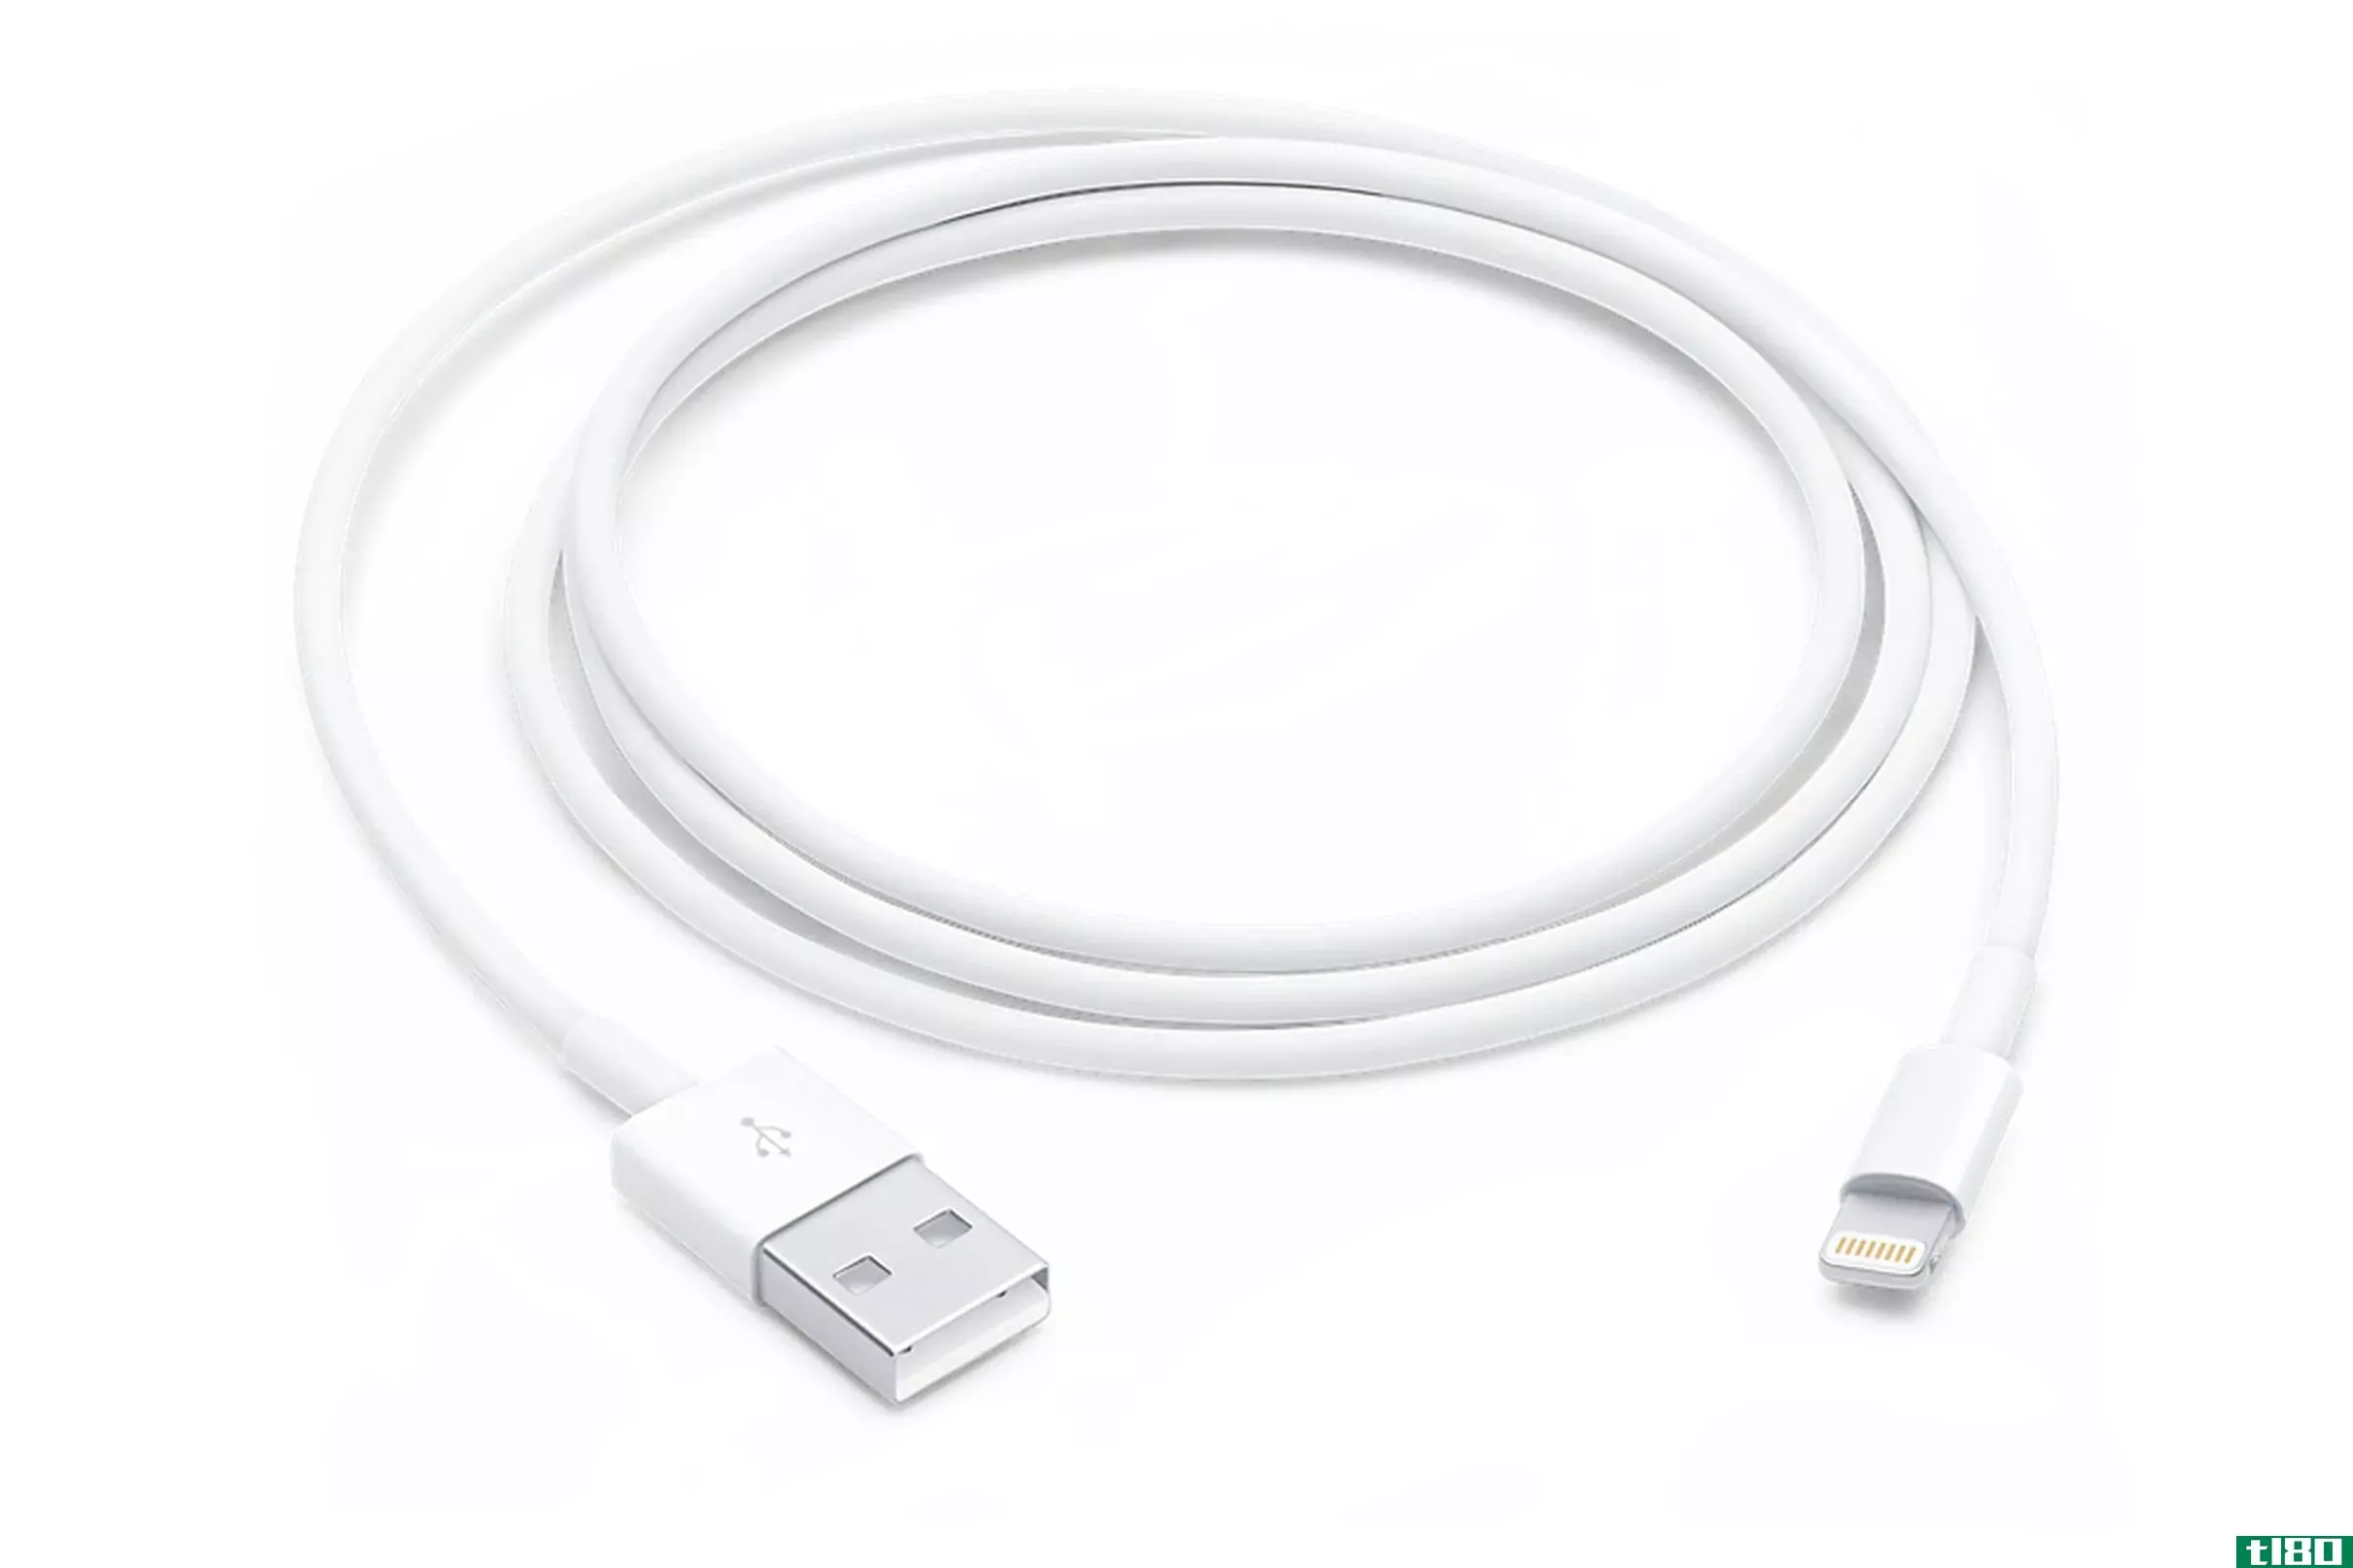 苹果的专利申请设想充电电缆可能不会那么容易磨损